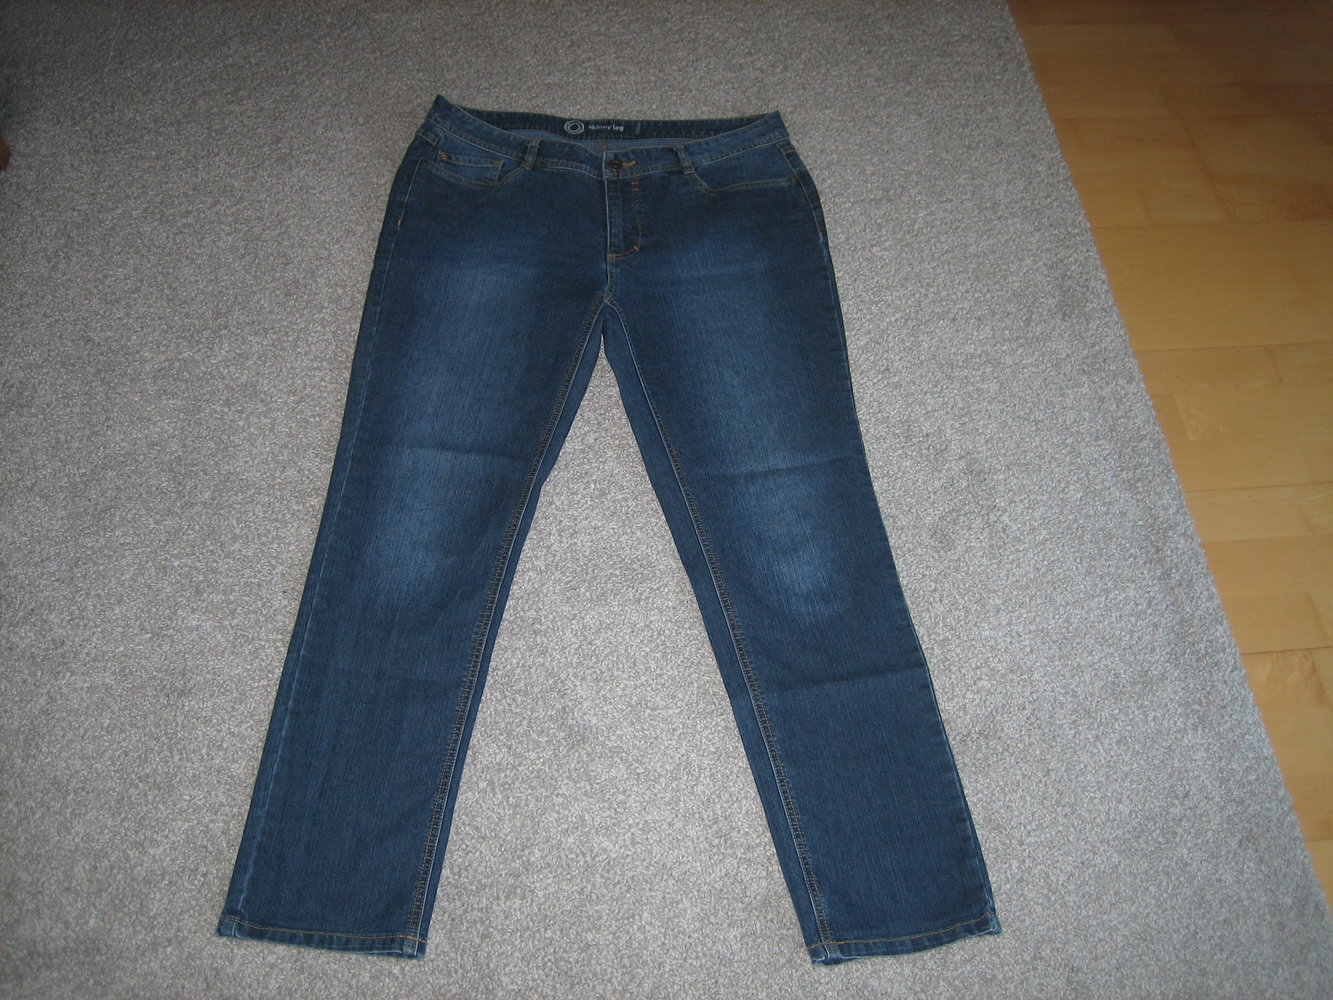 Superbequeme Jeans Gr. 42, vorteilhafter, perfekter Schnitt - ein Lieblingsteil!